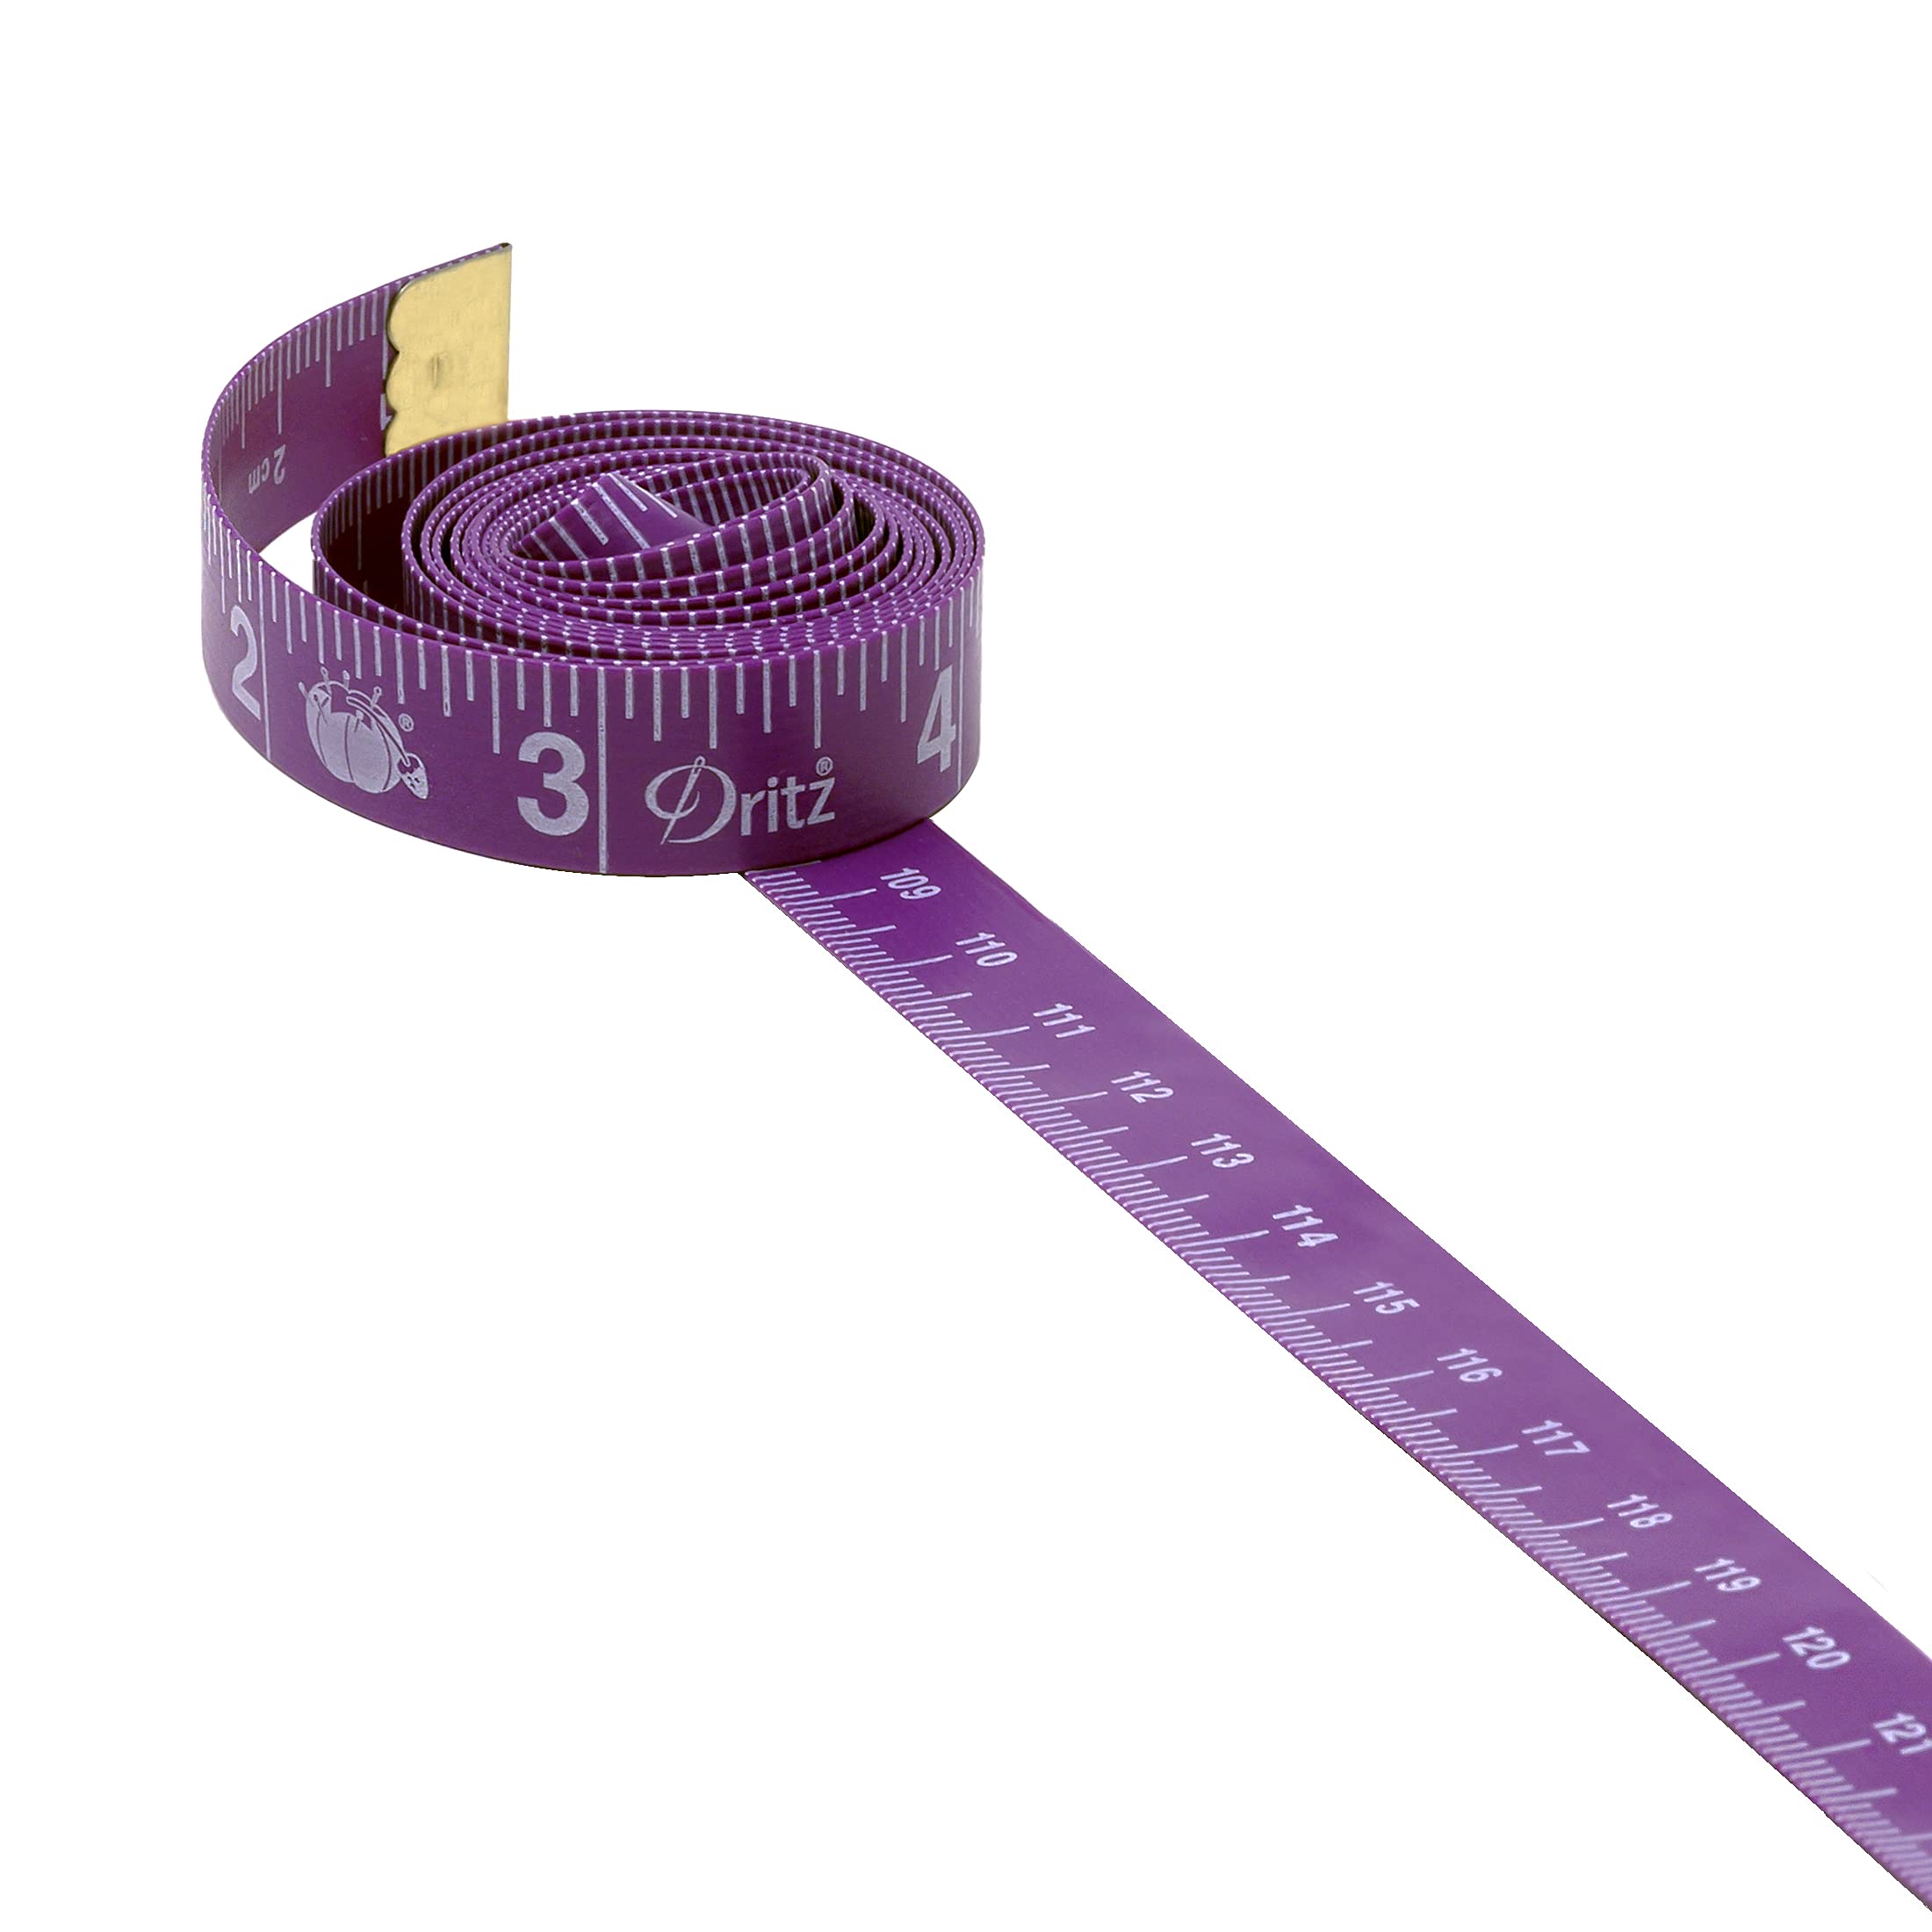 Sullivans 120 Pink Retractable Tape Measure